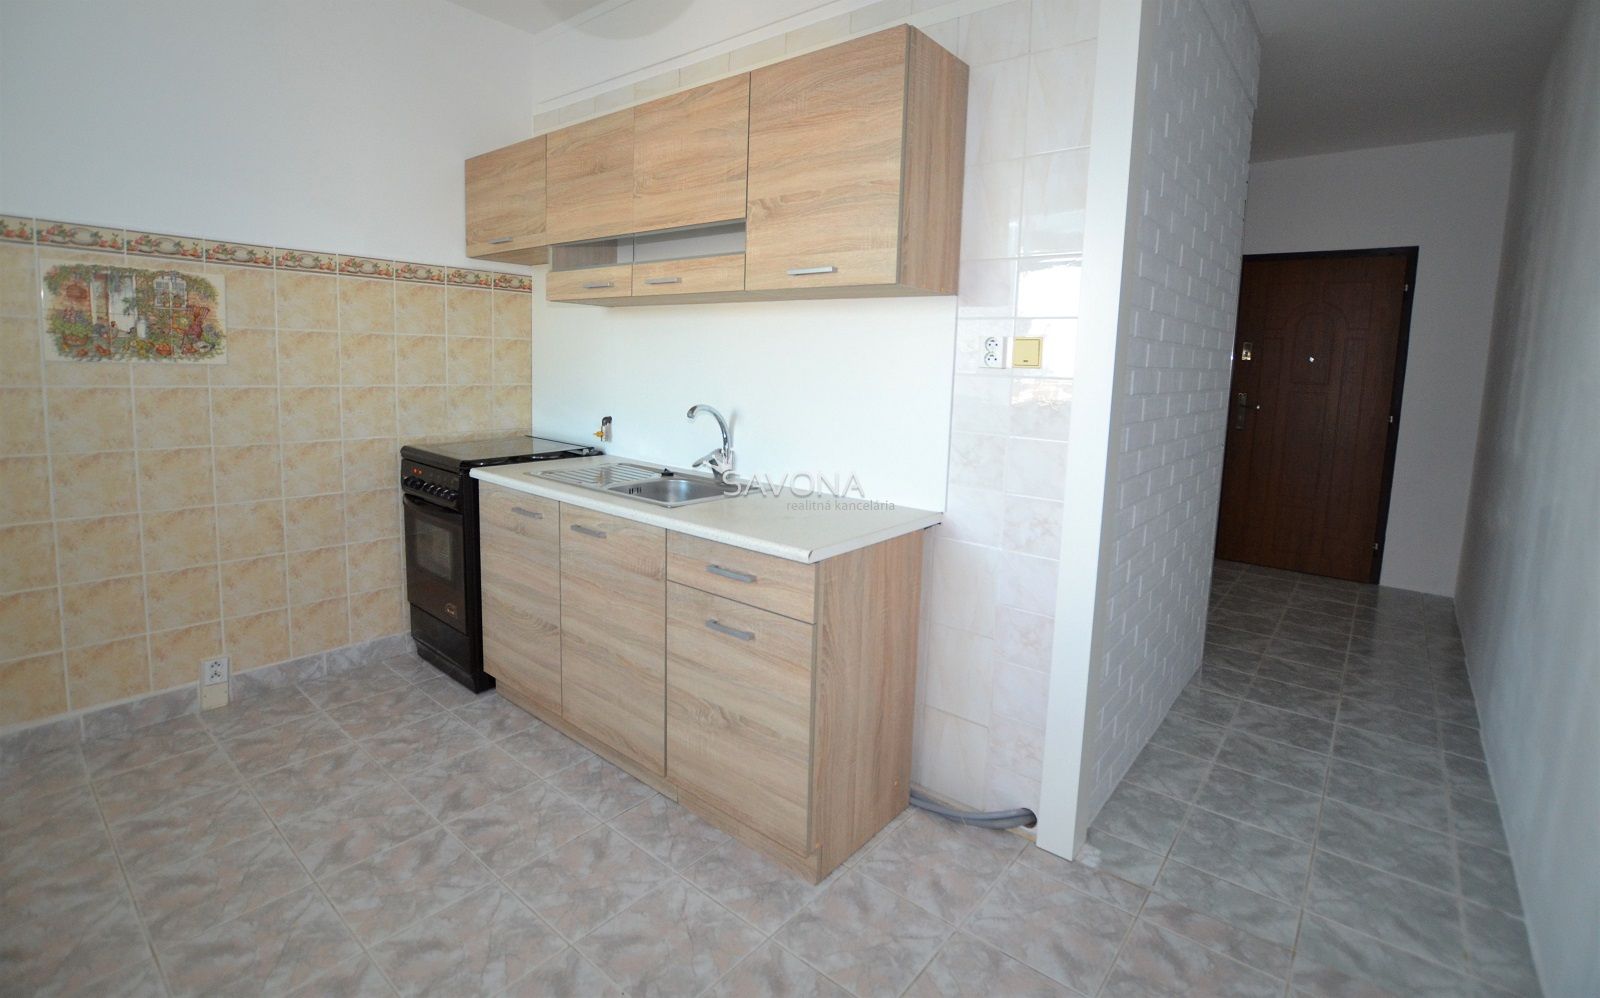 NA PREDAJ | 1 izbový byt s dvoma balkónmi, 47 m2, ul. Záborského, Poprad